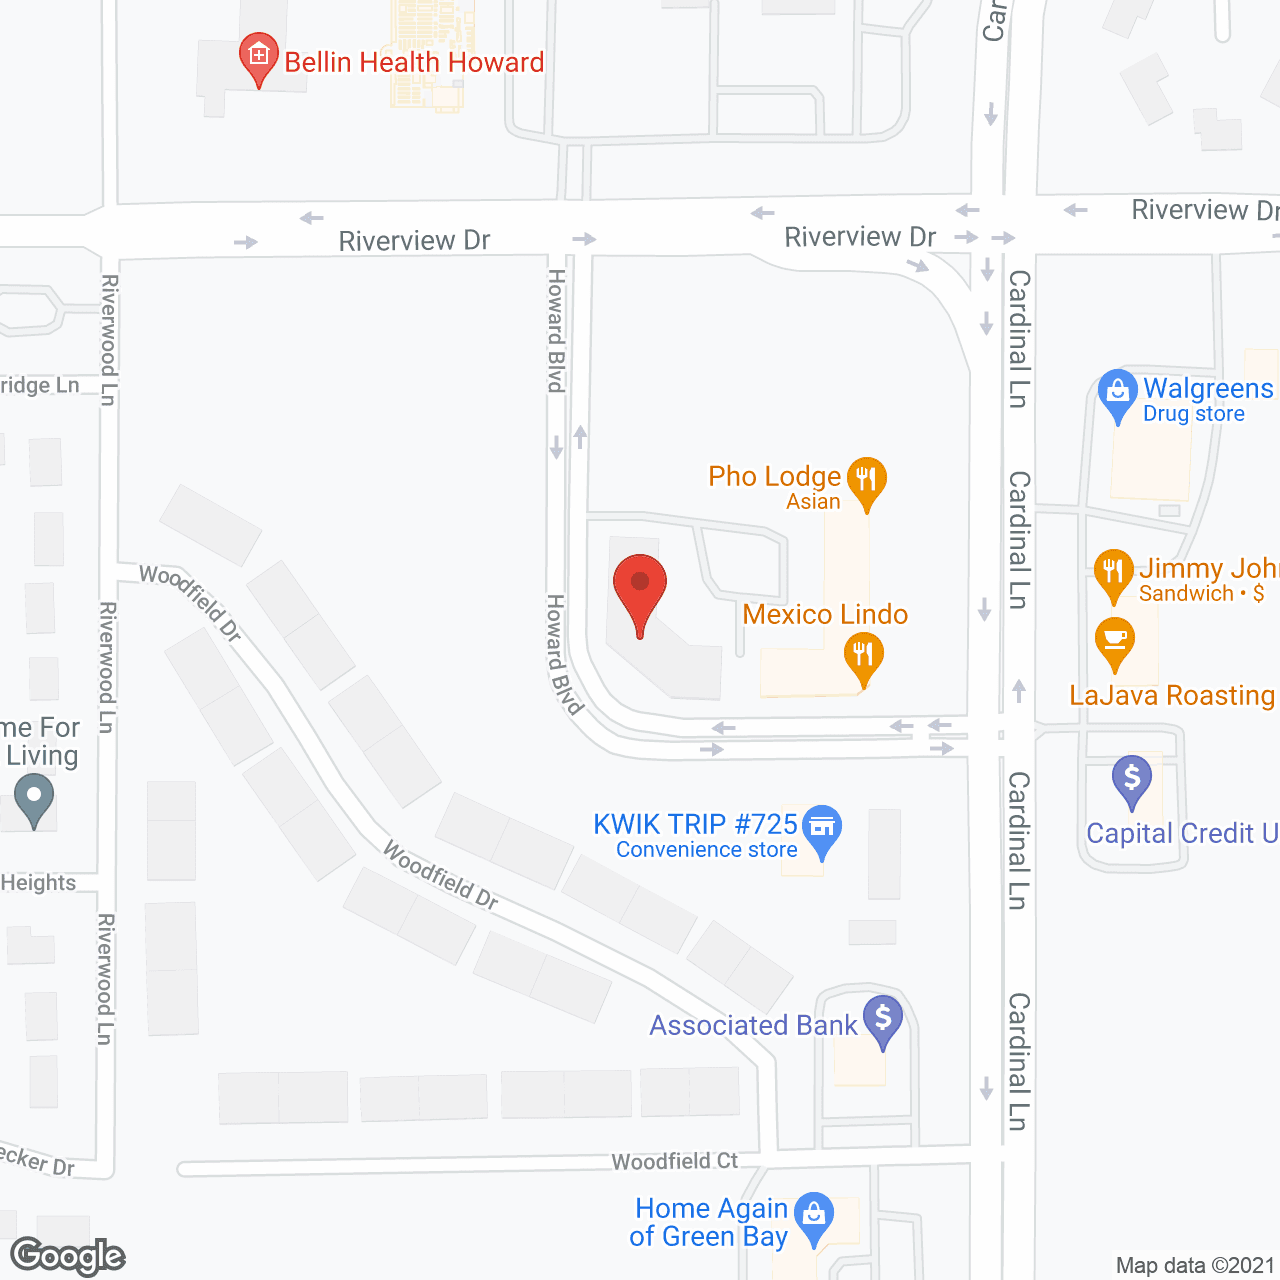 Woodfield Village II in google map